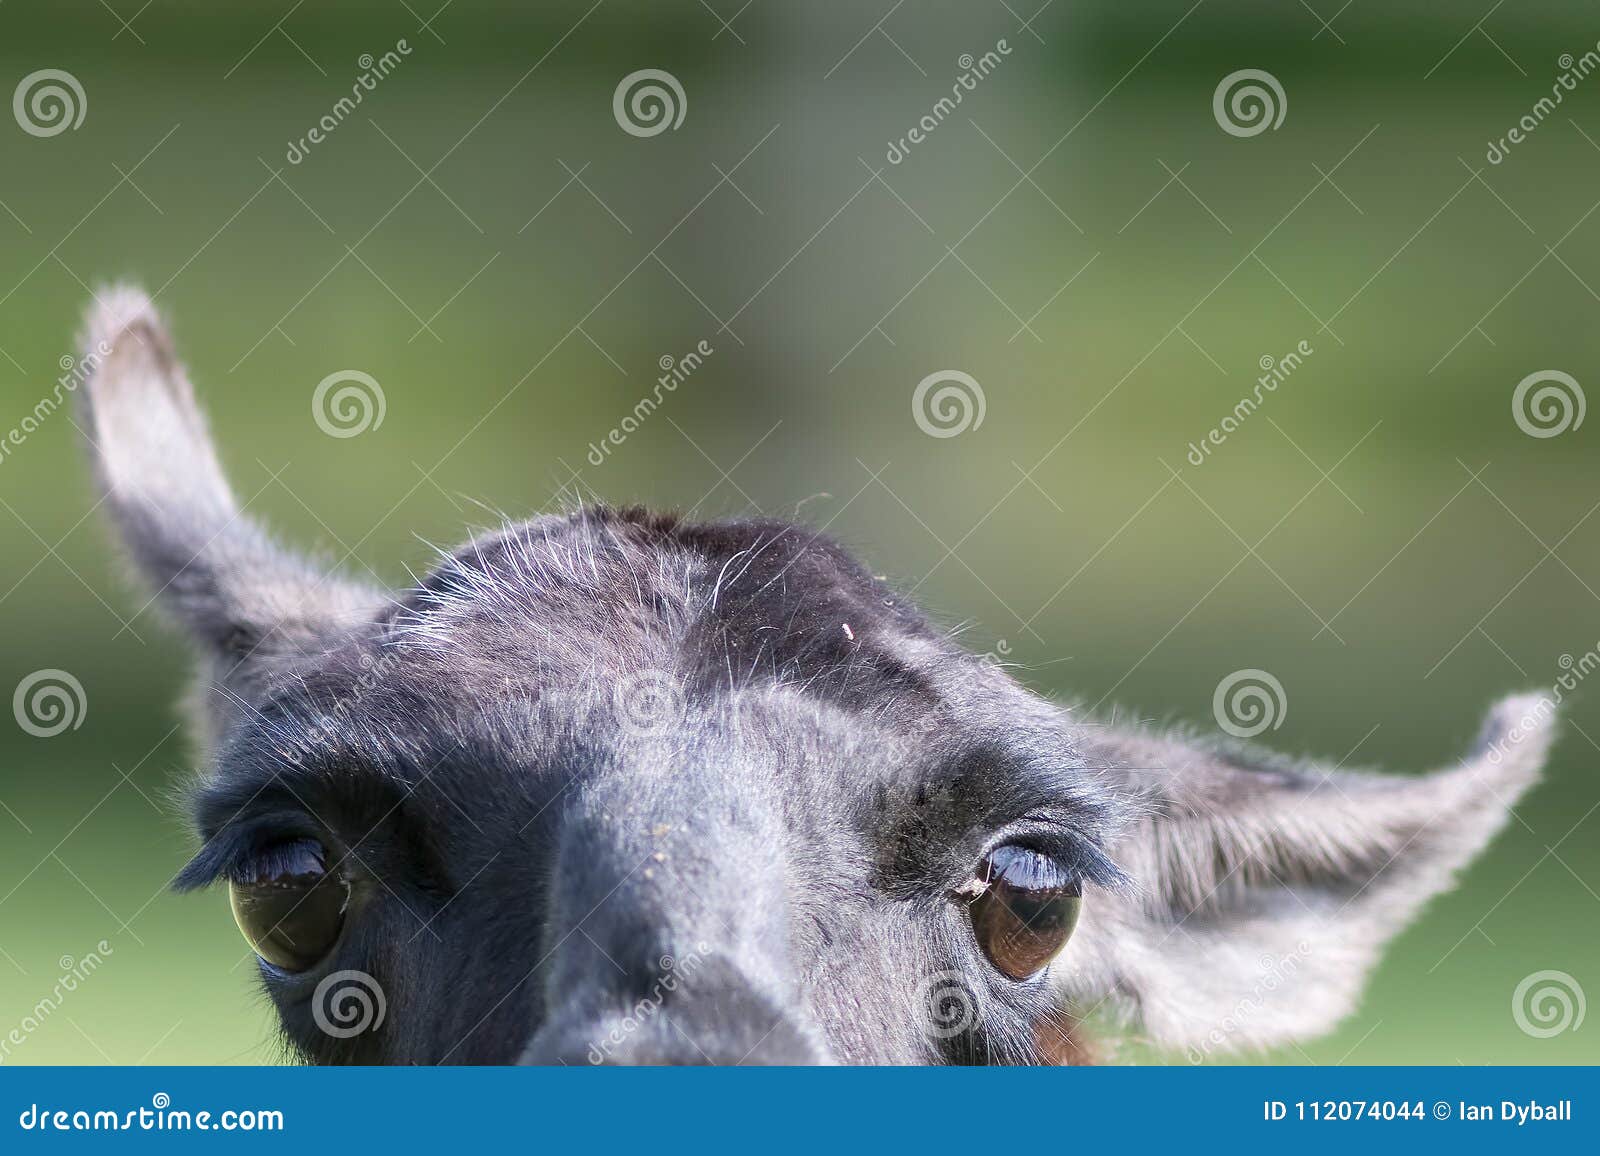 Immagine Animale Divertente Di Una Lama Inquisitrice Curiosa Fotografia Stock Immagine Di Testo Grande